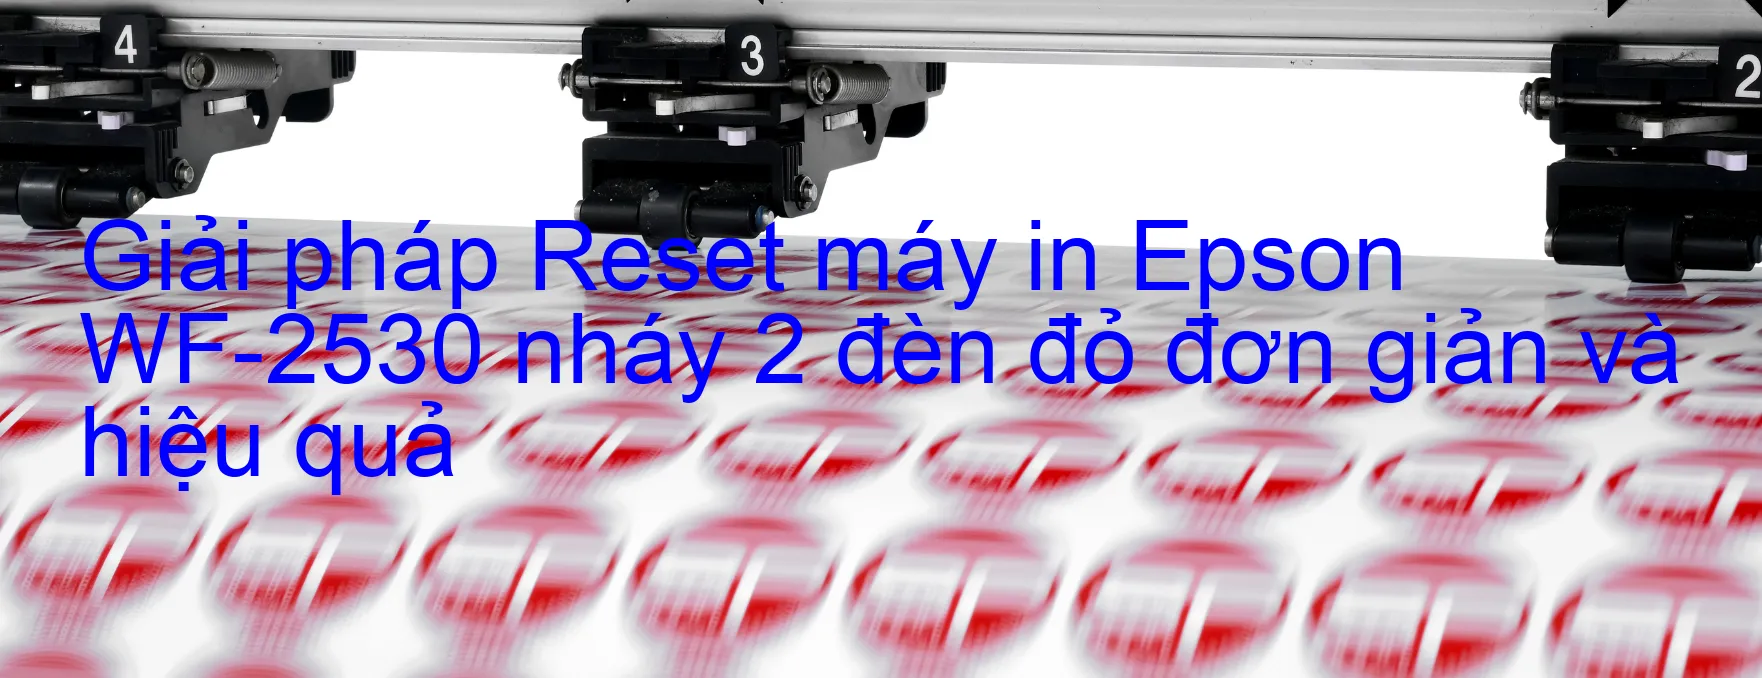 Reset máy in Epson WF-2530 nháy 2 đèn đỏ: Cách khắc phục lỗi một cách đơn giản và hiệu quả